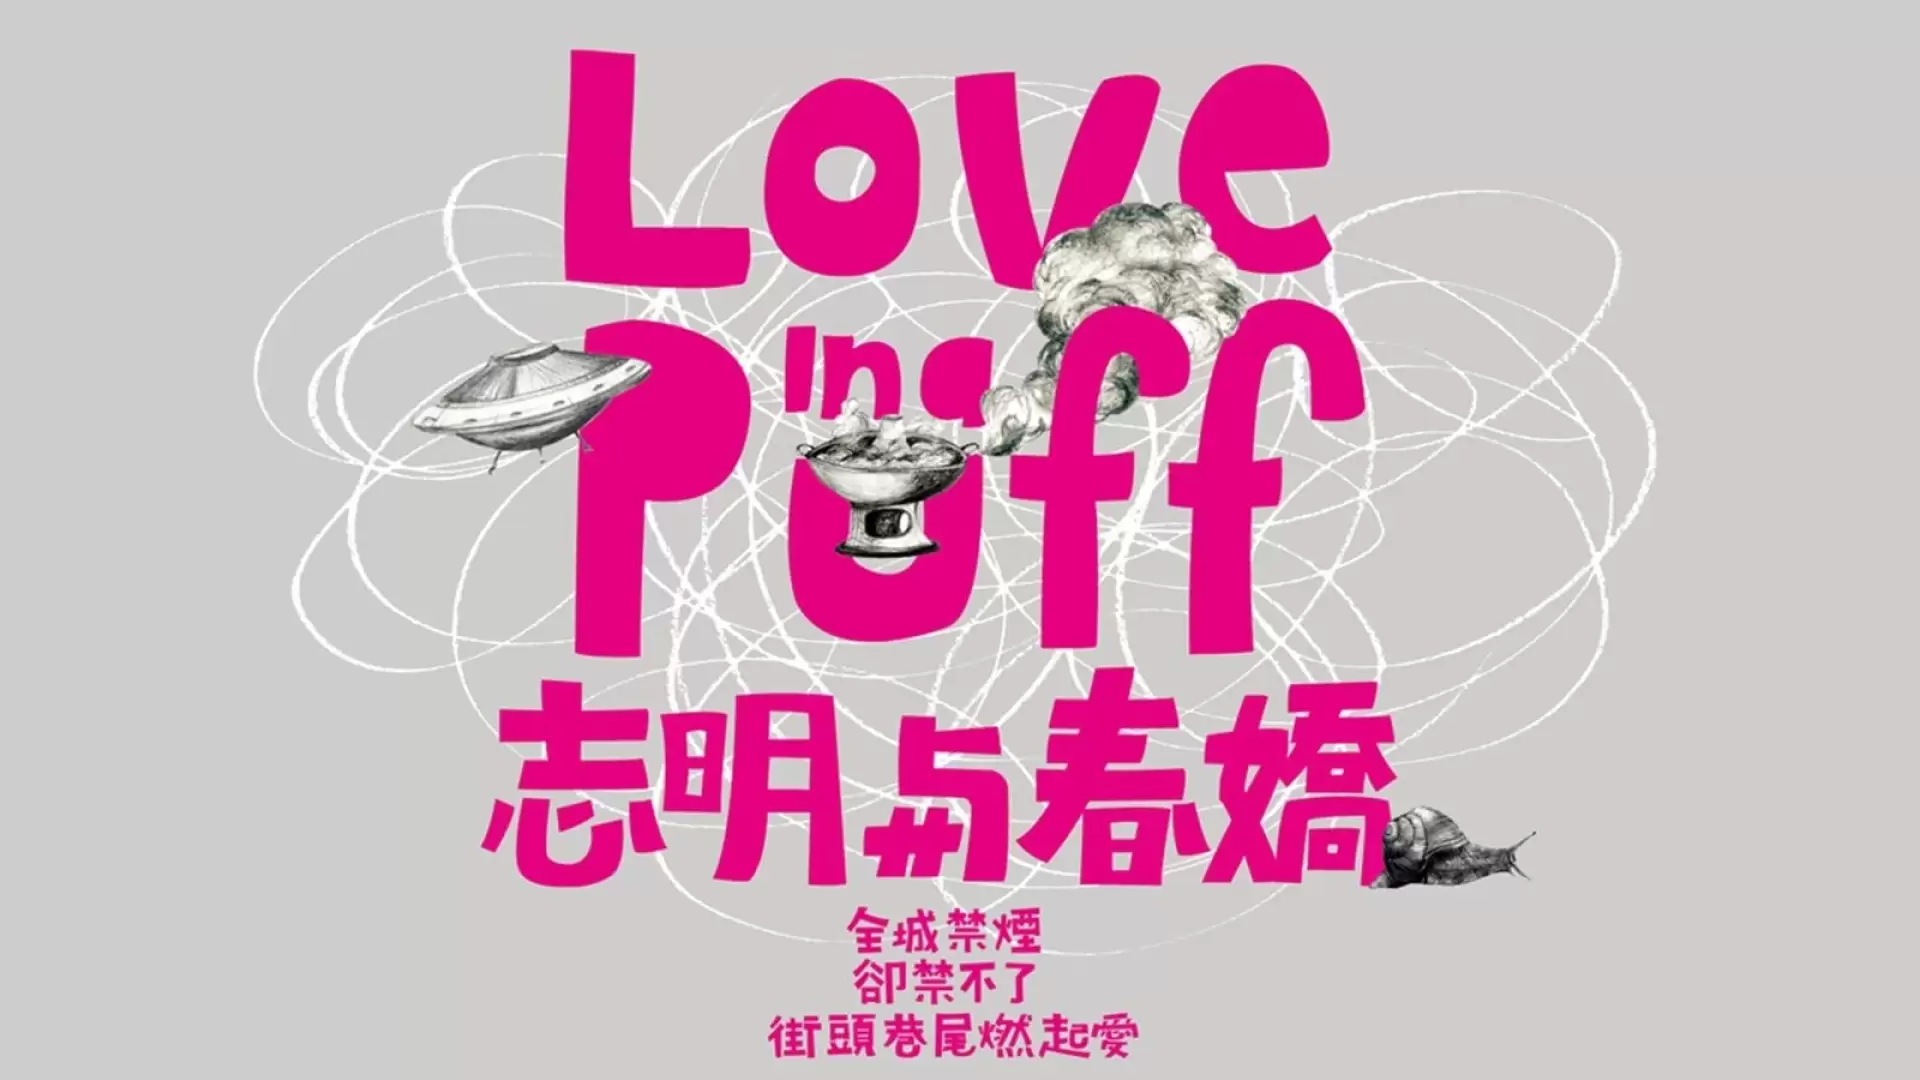 دانلود فیلم Love in a Puff 2010